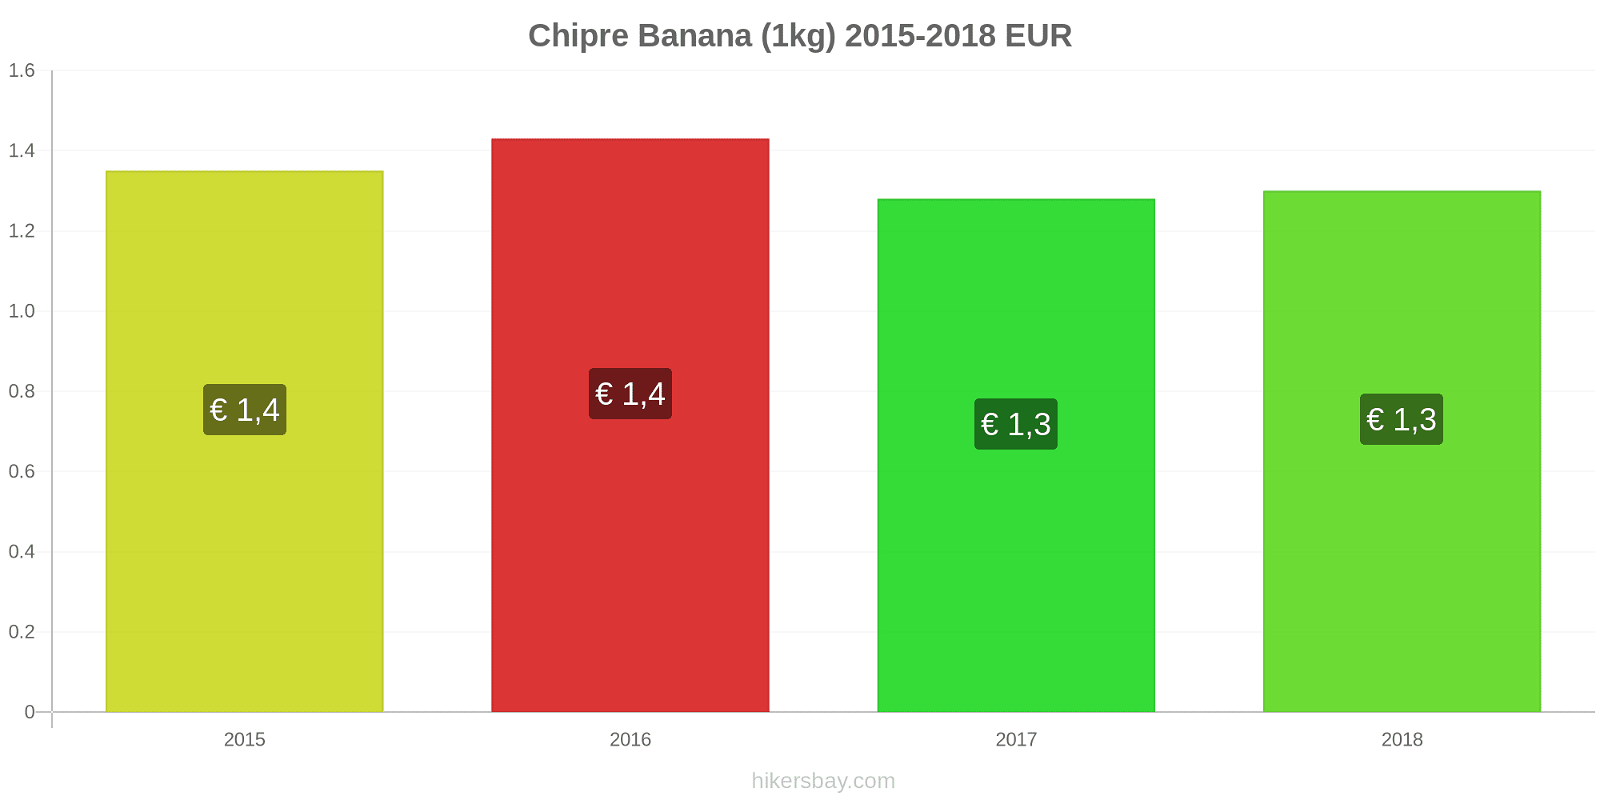 Chipre mudanças de preços Bananas (1kg) hikersbay.com